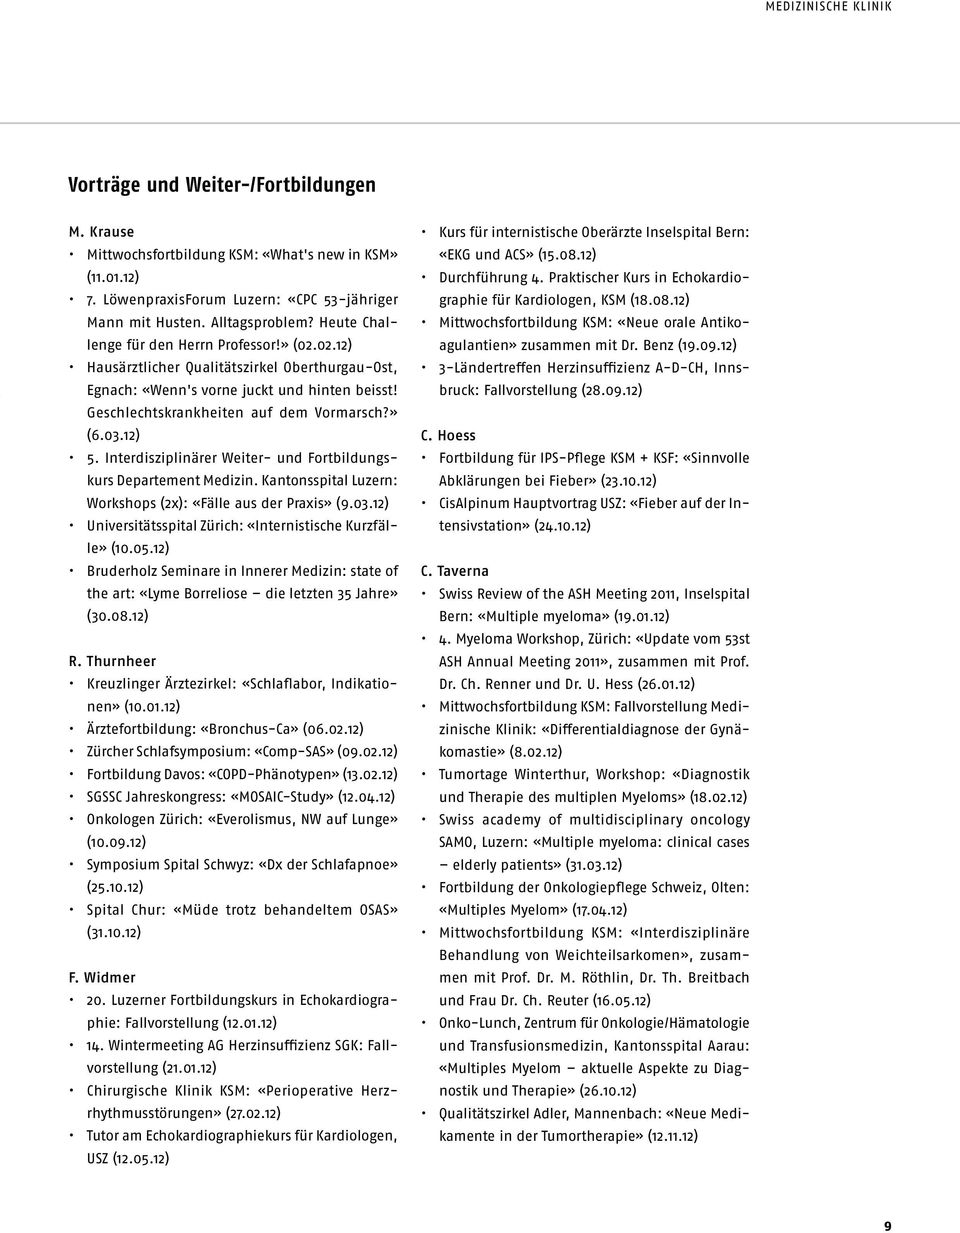 12) 5. Interdisziplinärer Weiter- und Fortbildungskurs Departement Medizin. Kantonsspital Luzern: Workshops (2x): «Fälle aus der Praxis» (9.03.